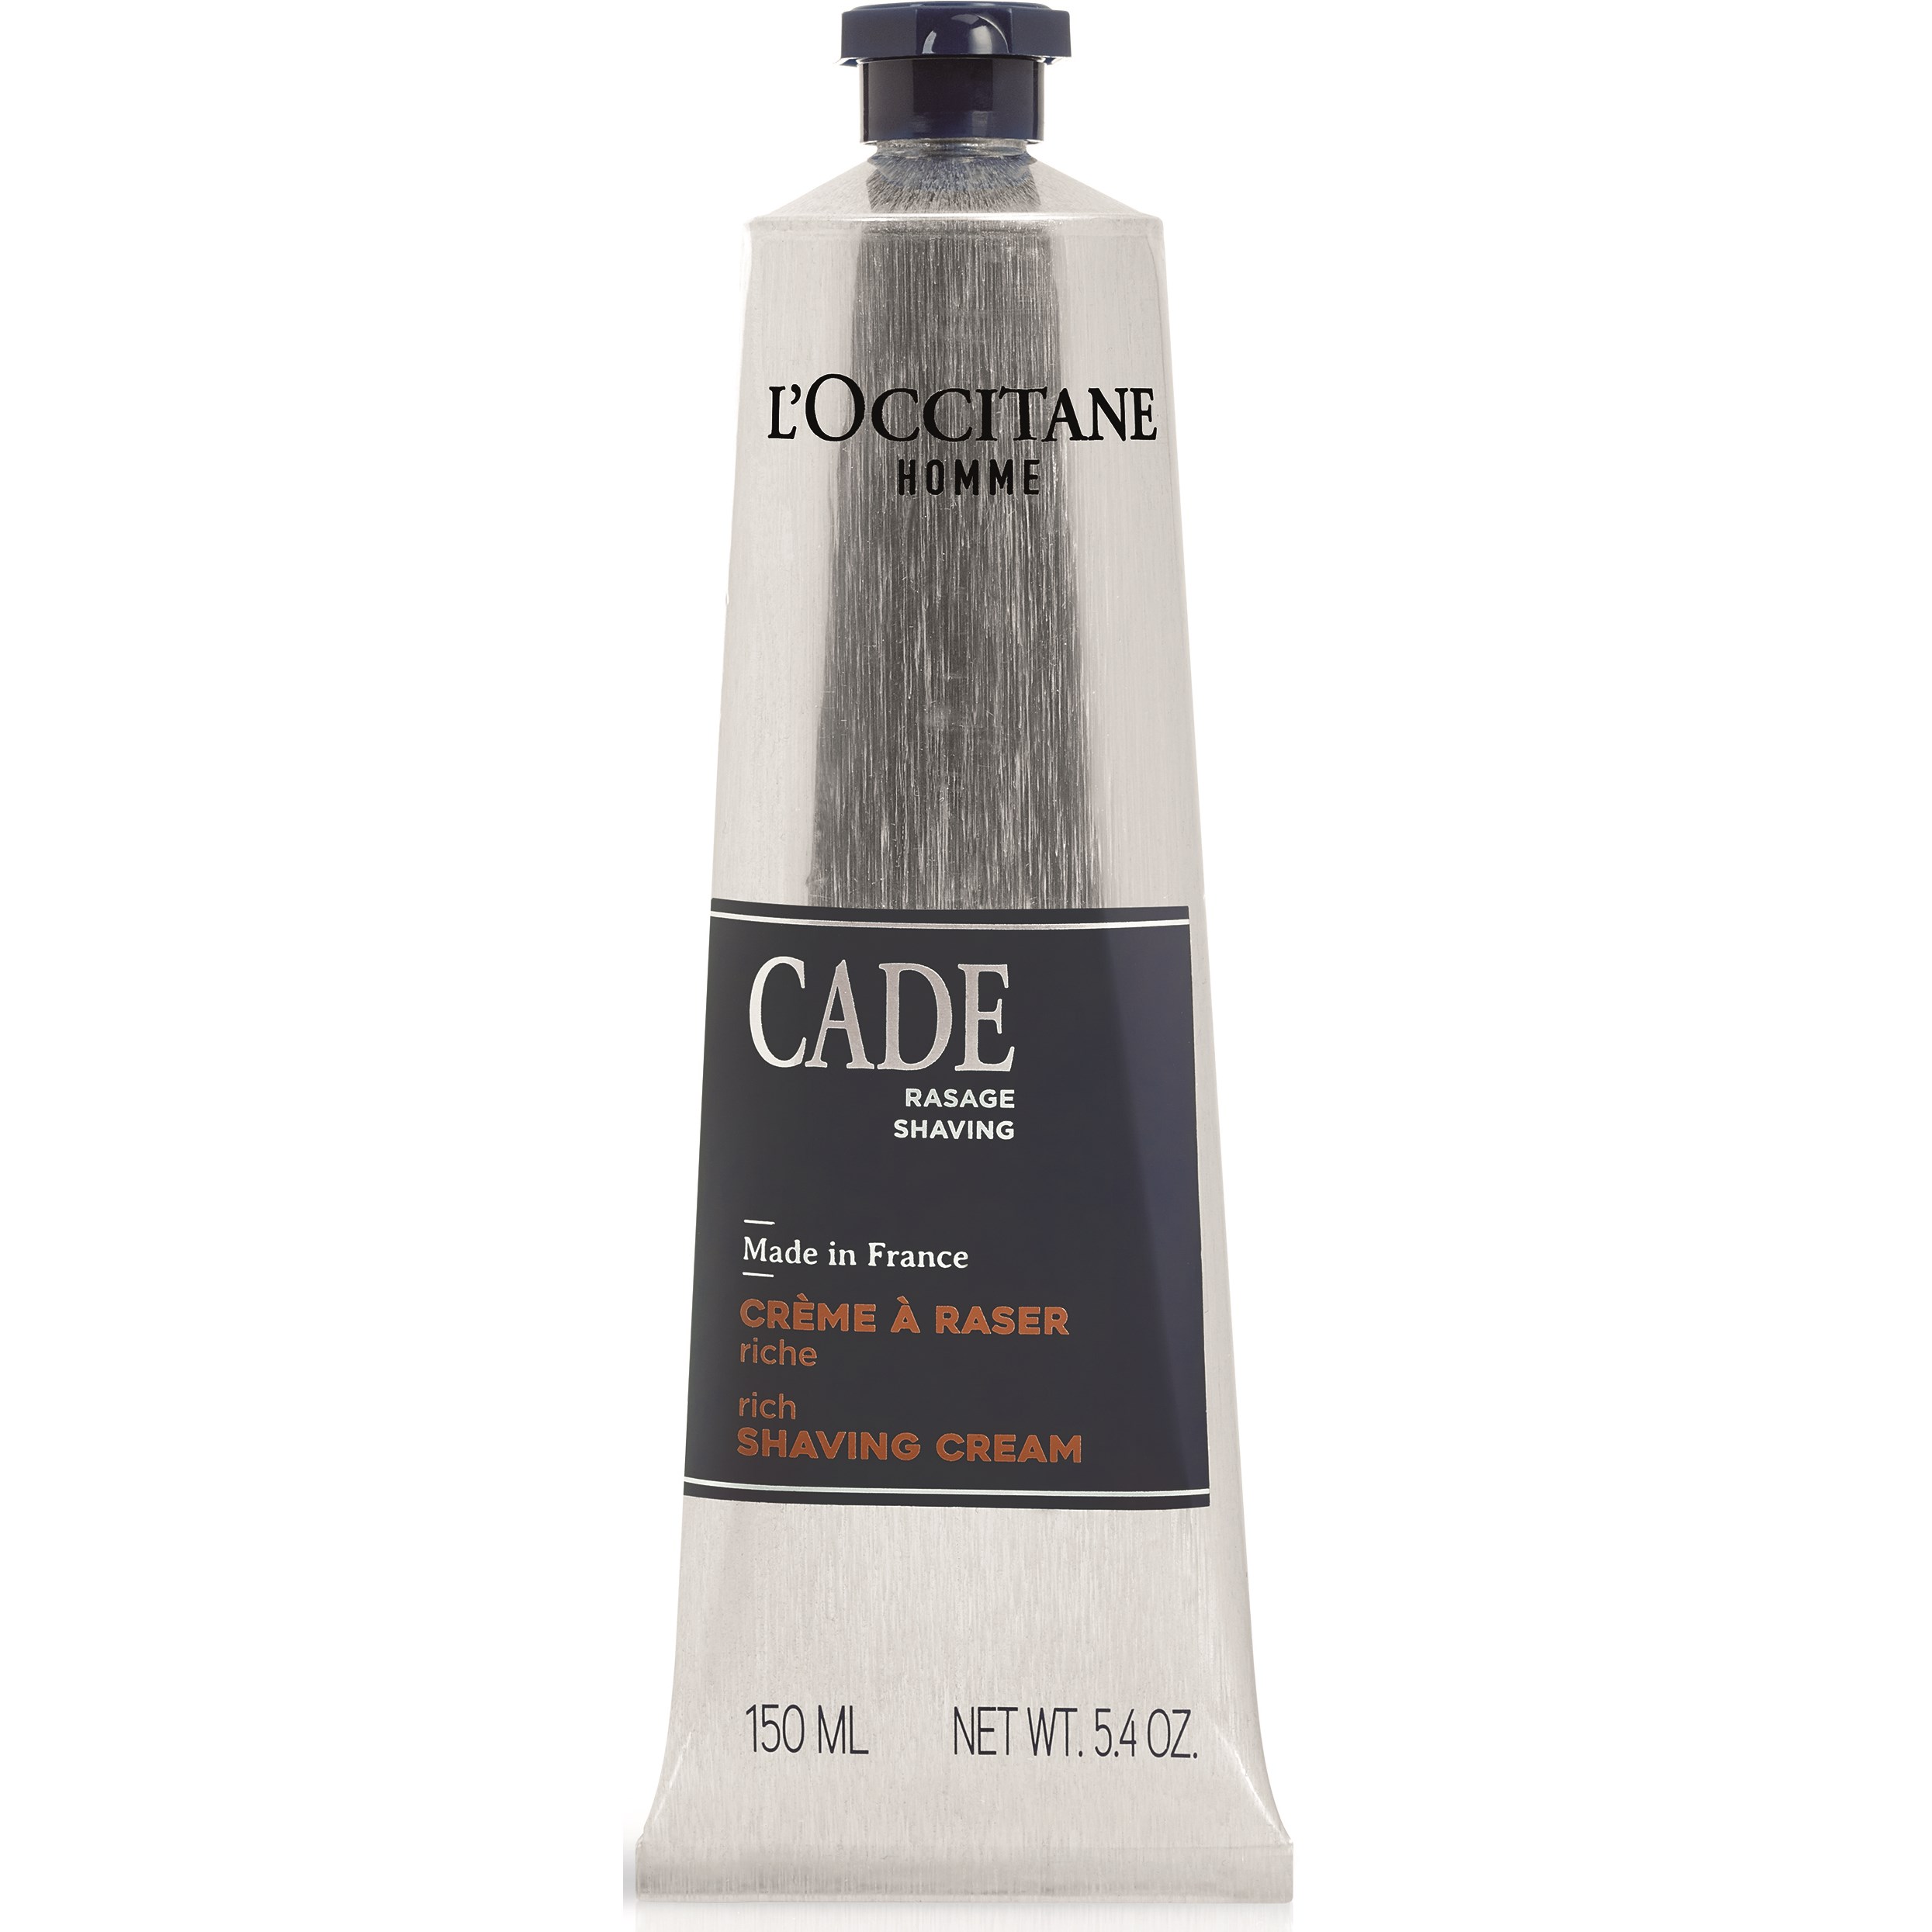 LOccitane Cade Rich Shaving Cream 150 ml